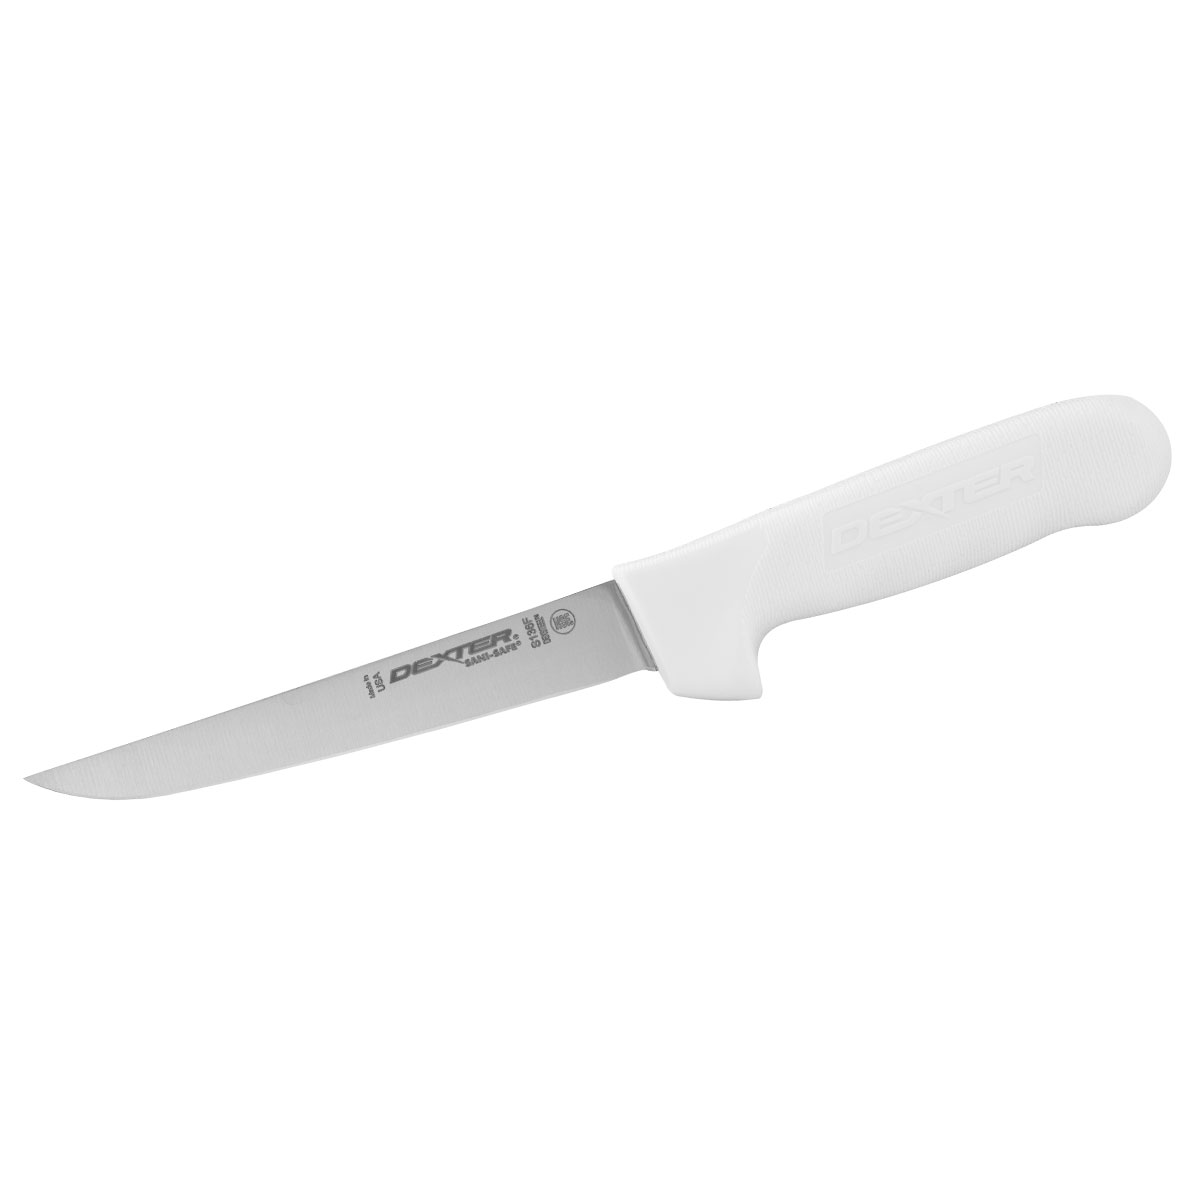 Dexter Boning Knife, 15cm (6) - Flexible, Sanisafe - White